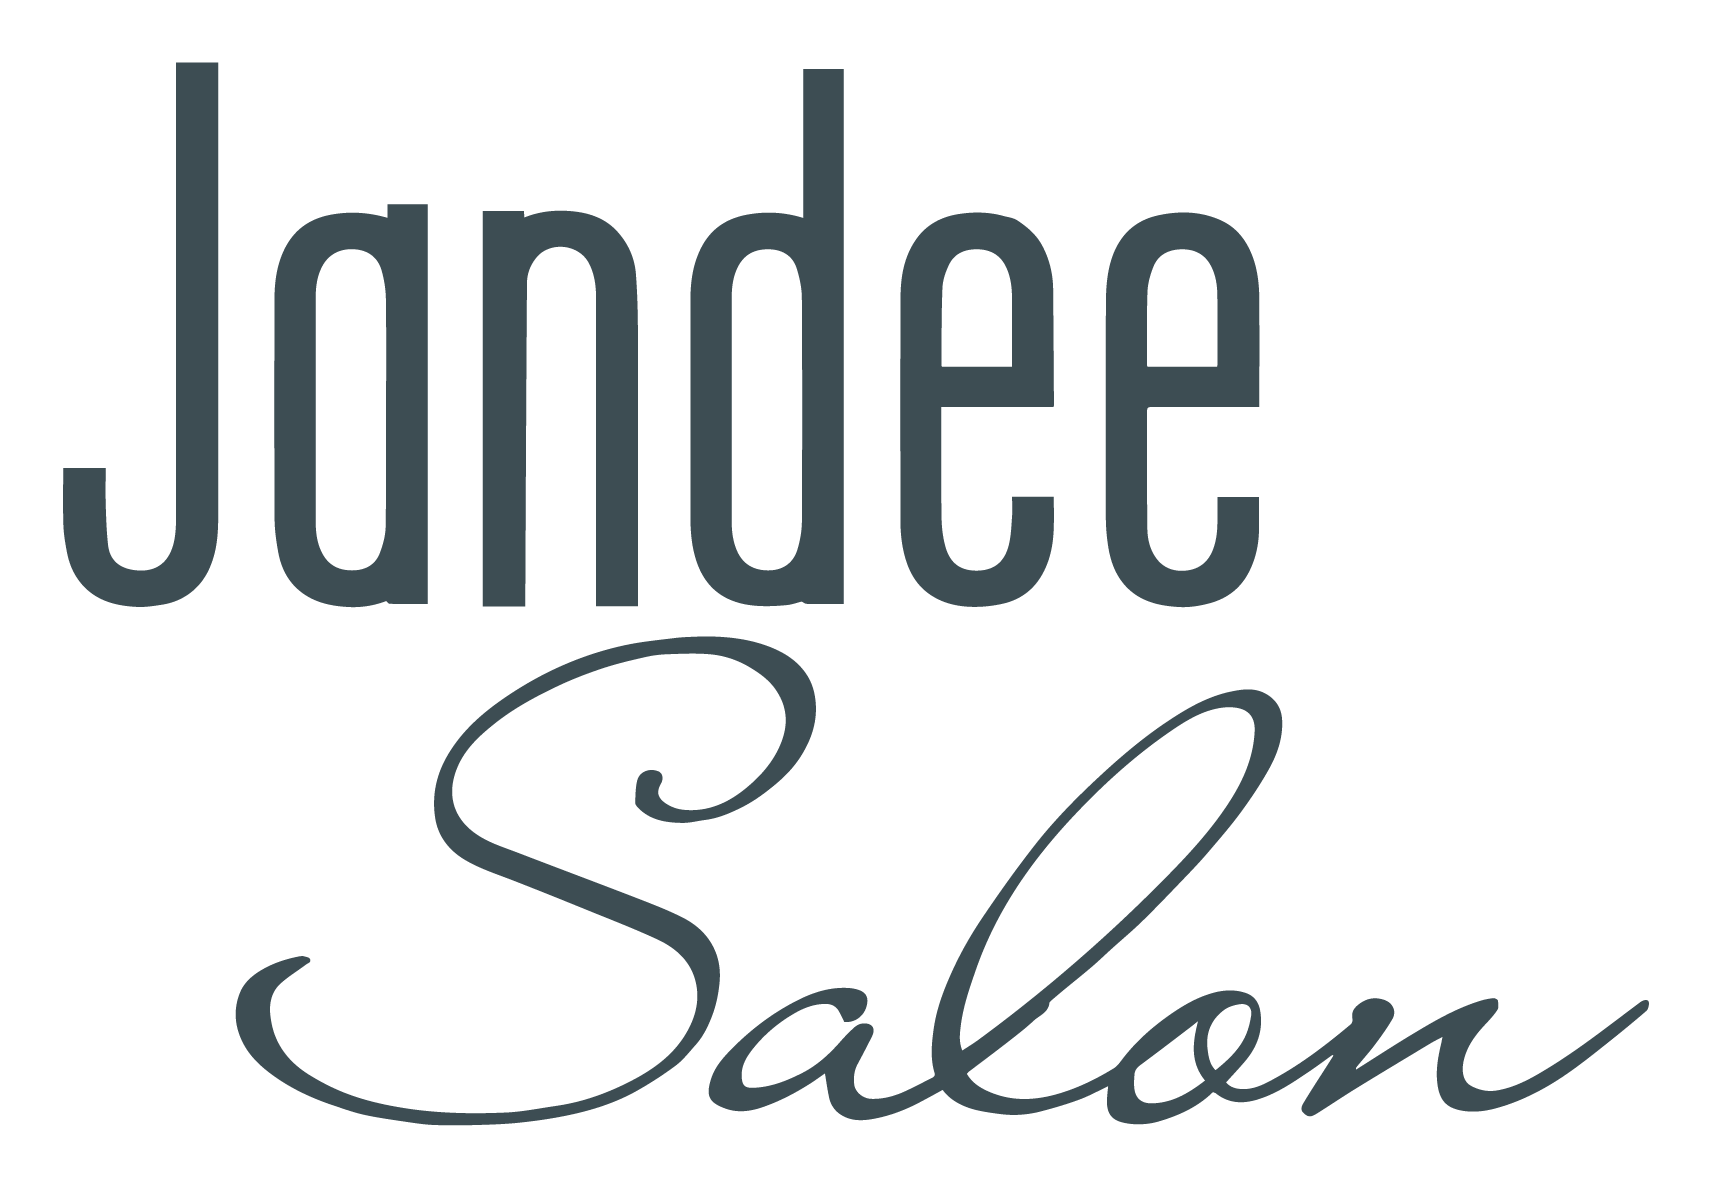 Jandee Salon